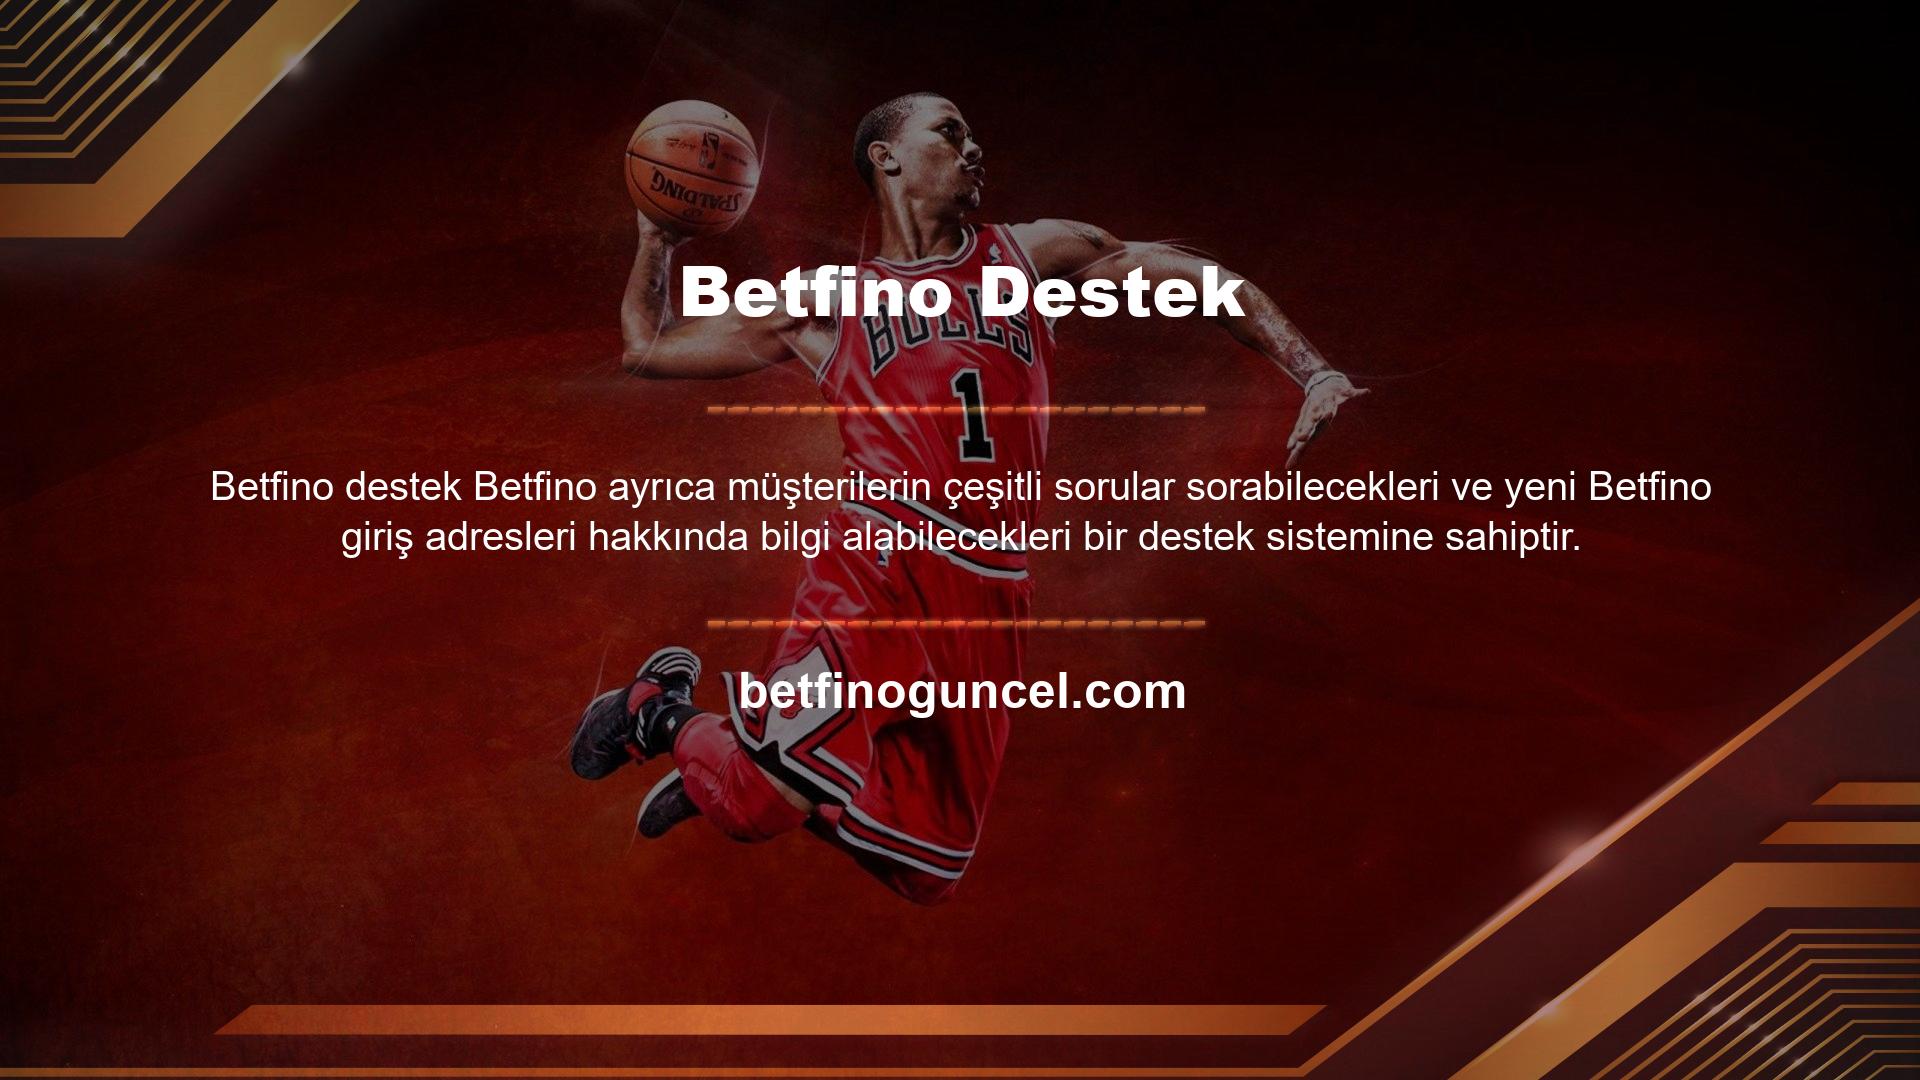 Betfino Destek Yeni Giriş Adresi
Oynanacak çeşitli halka açık bahisler, casinolar ve sanal oyunlar ile Betfino adresi, insanların iyi vakit geçirmesi için bir site haline geldi